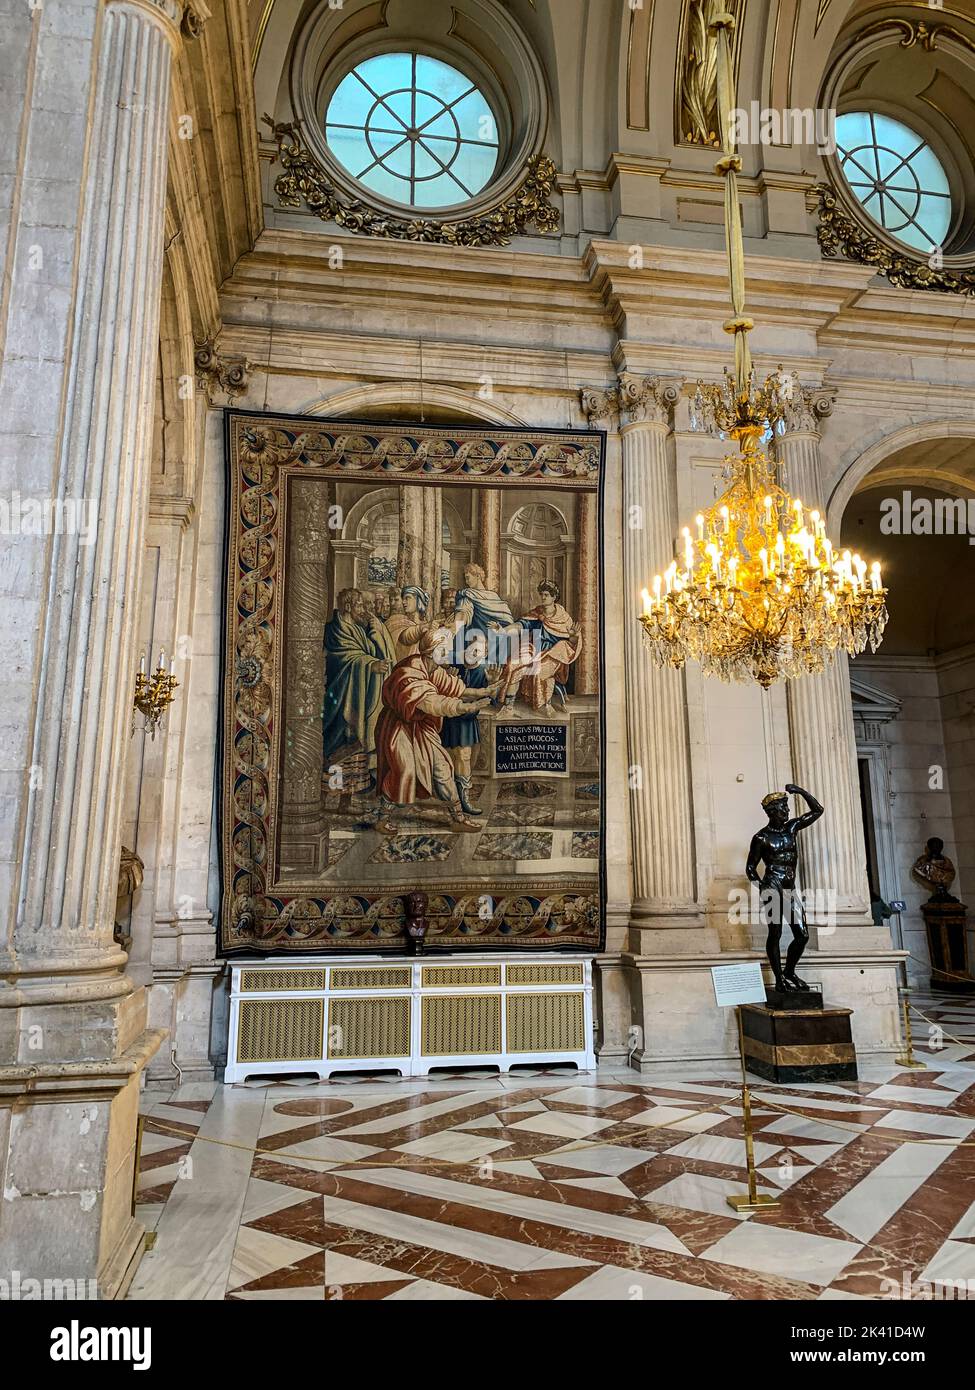 Spanien, Madrid. Königspalast.Säulenhalle, mit Wandteppich aus dem 17.. Jahrhundert. Stockfoto